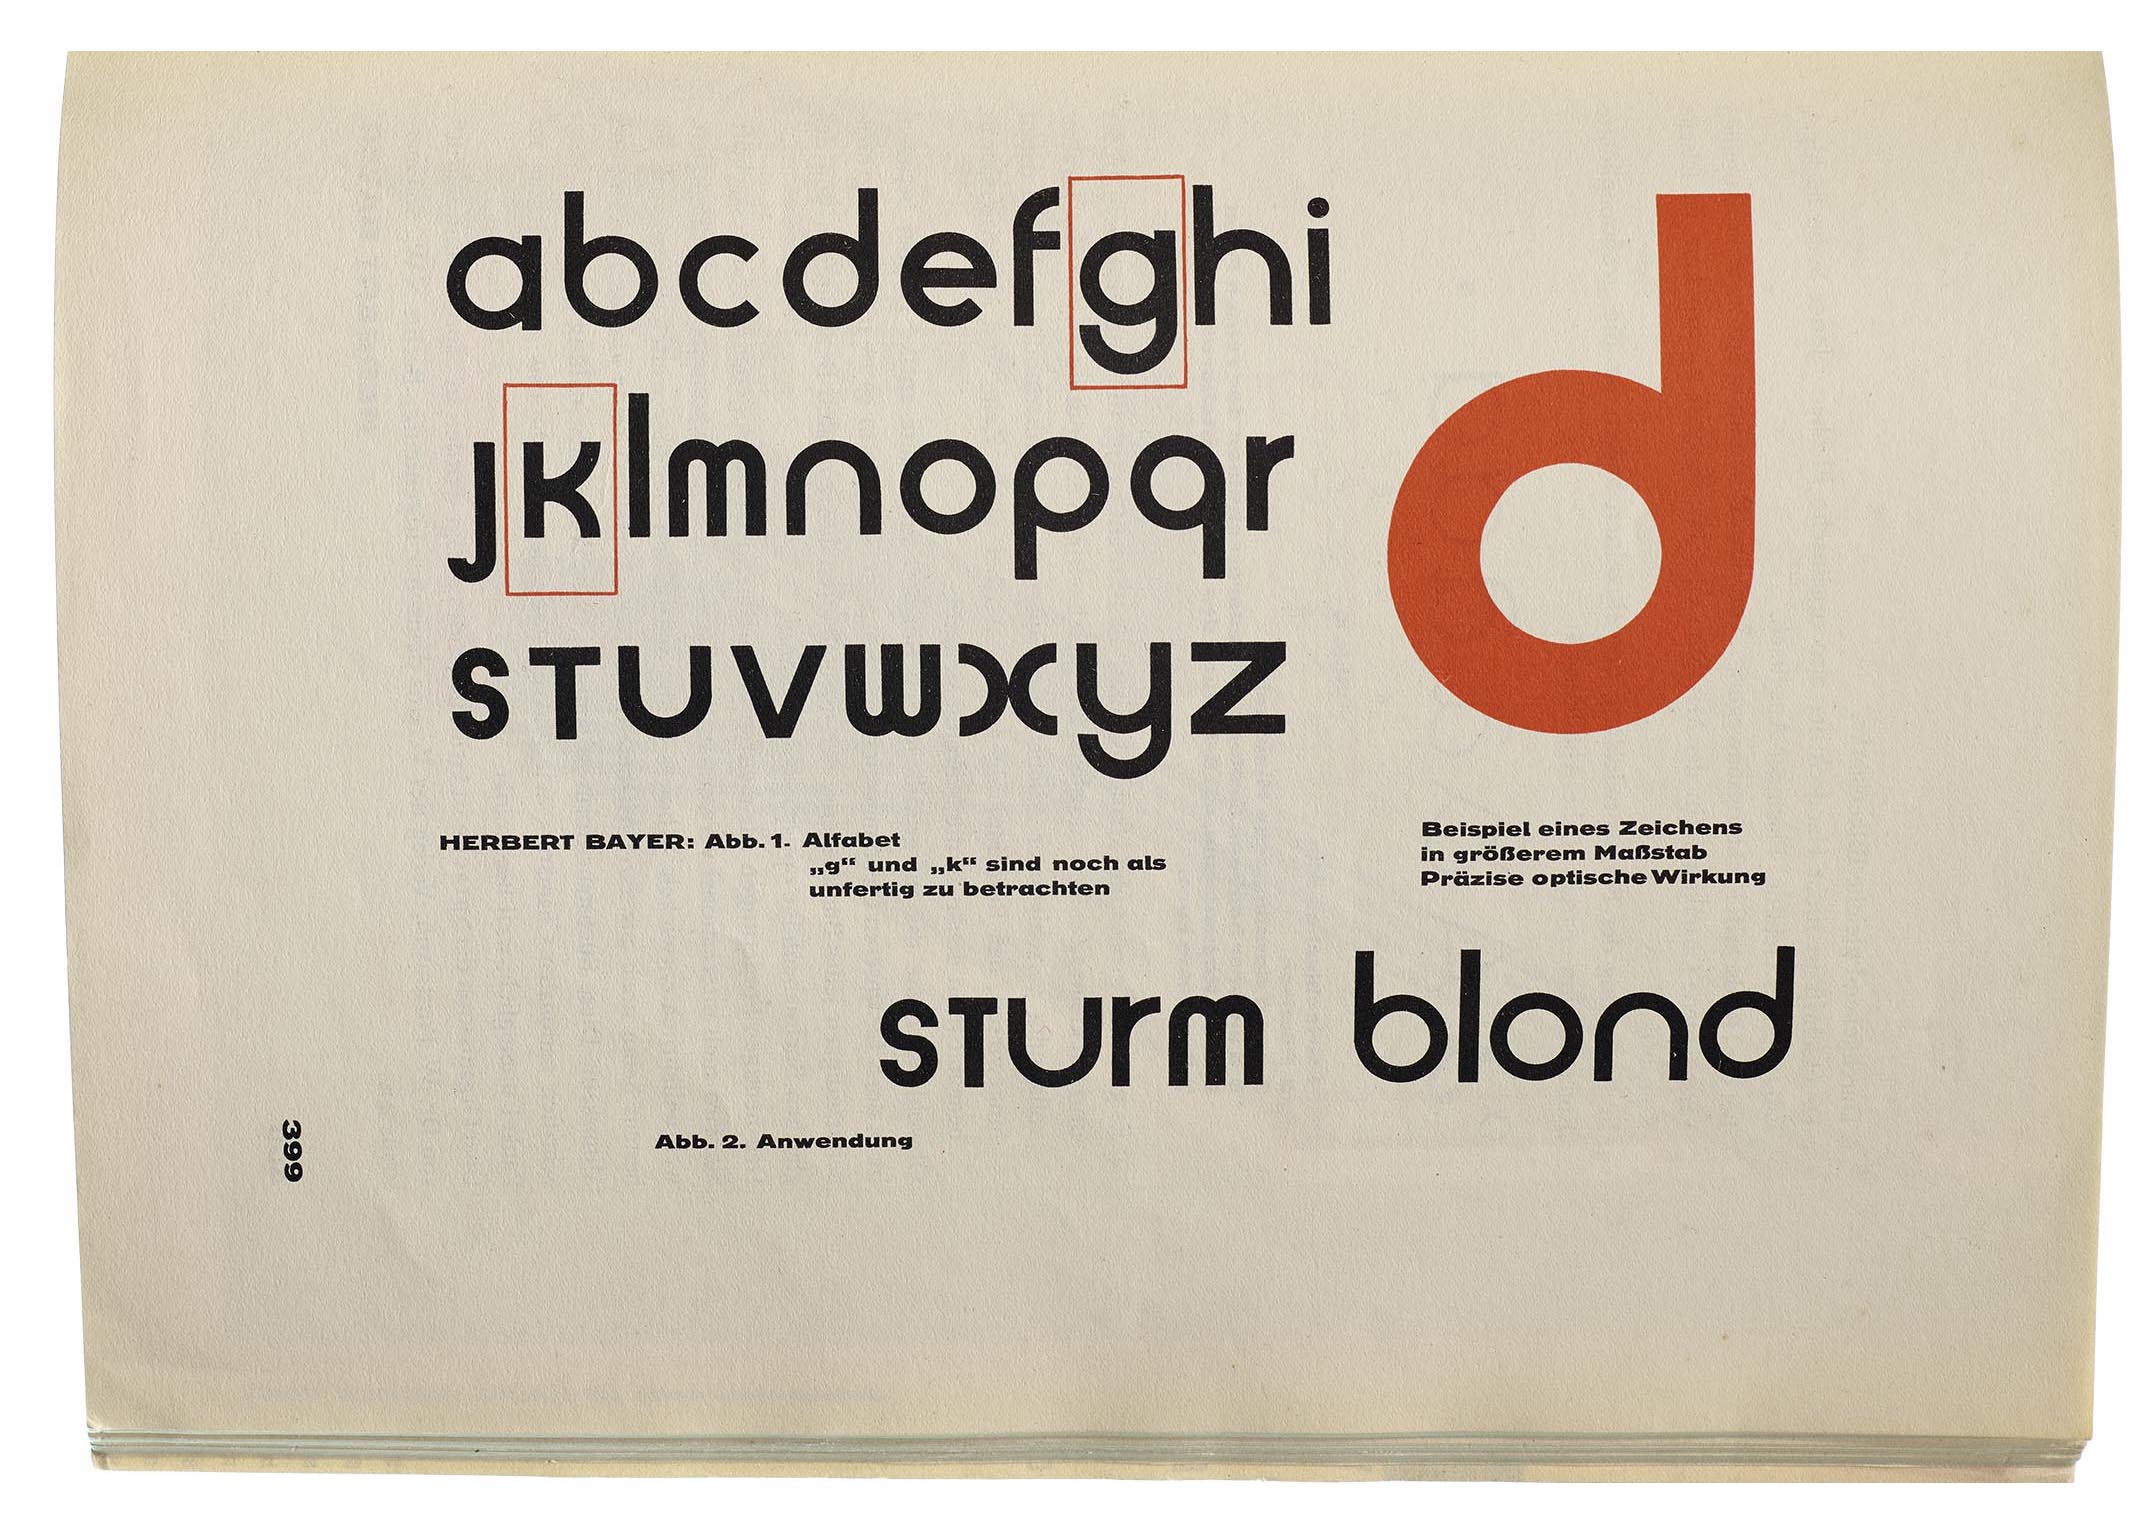 Herbert Bayer’s Universal typeface